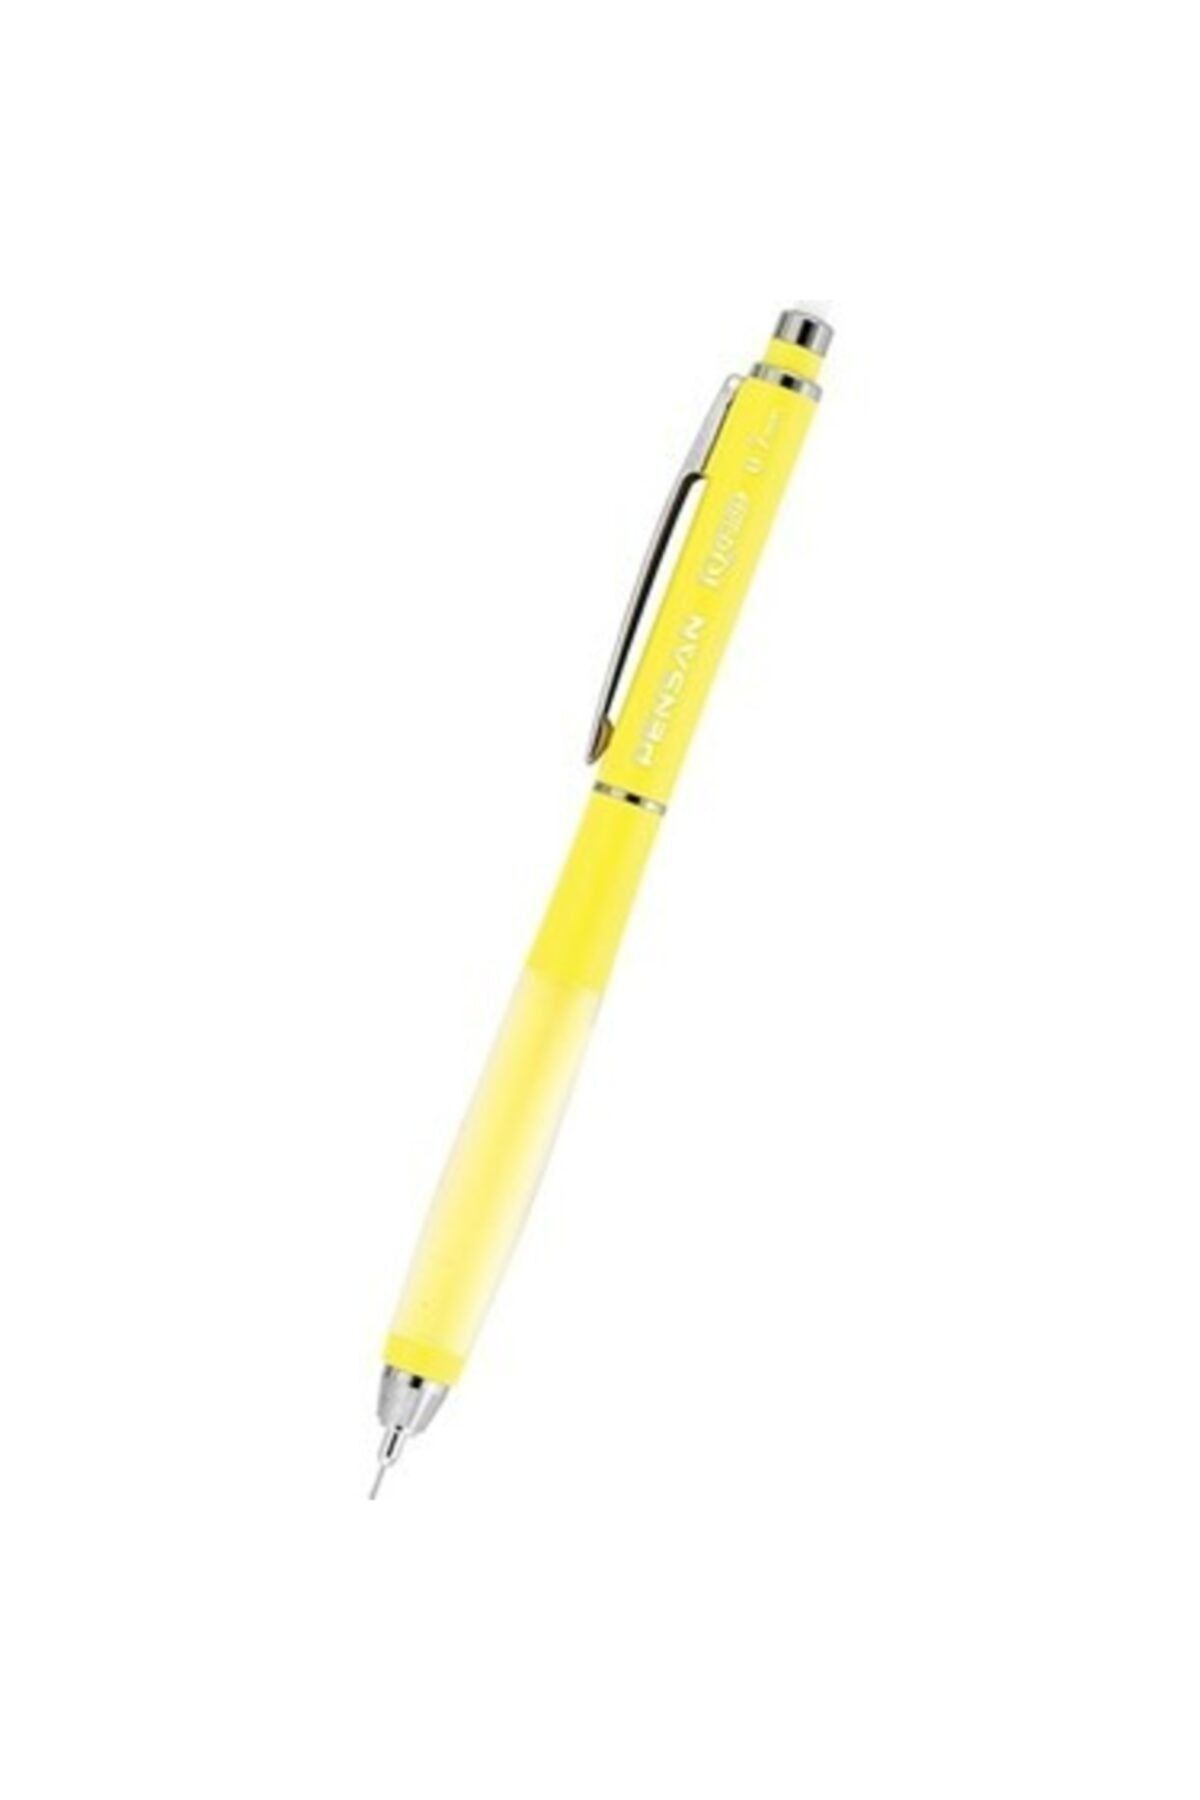 Pensan Iq Plus Versatil Kalem 0.5 Mm Sarı